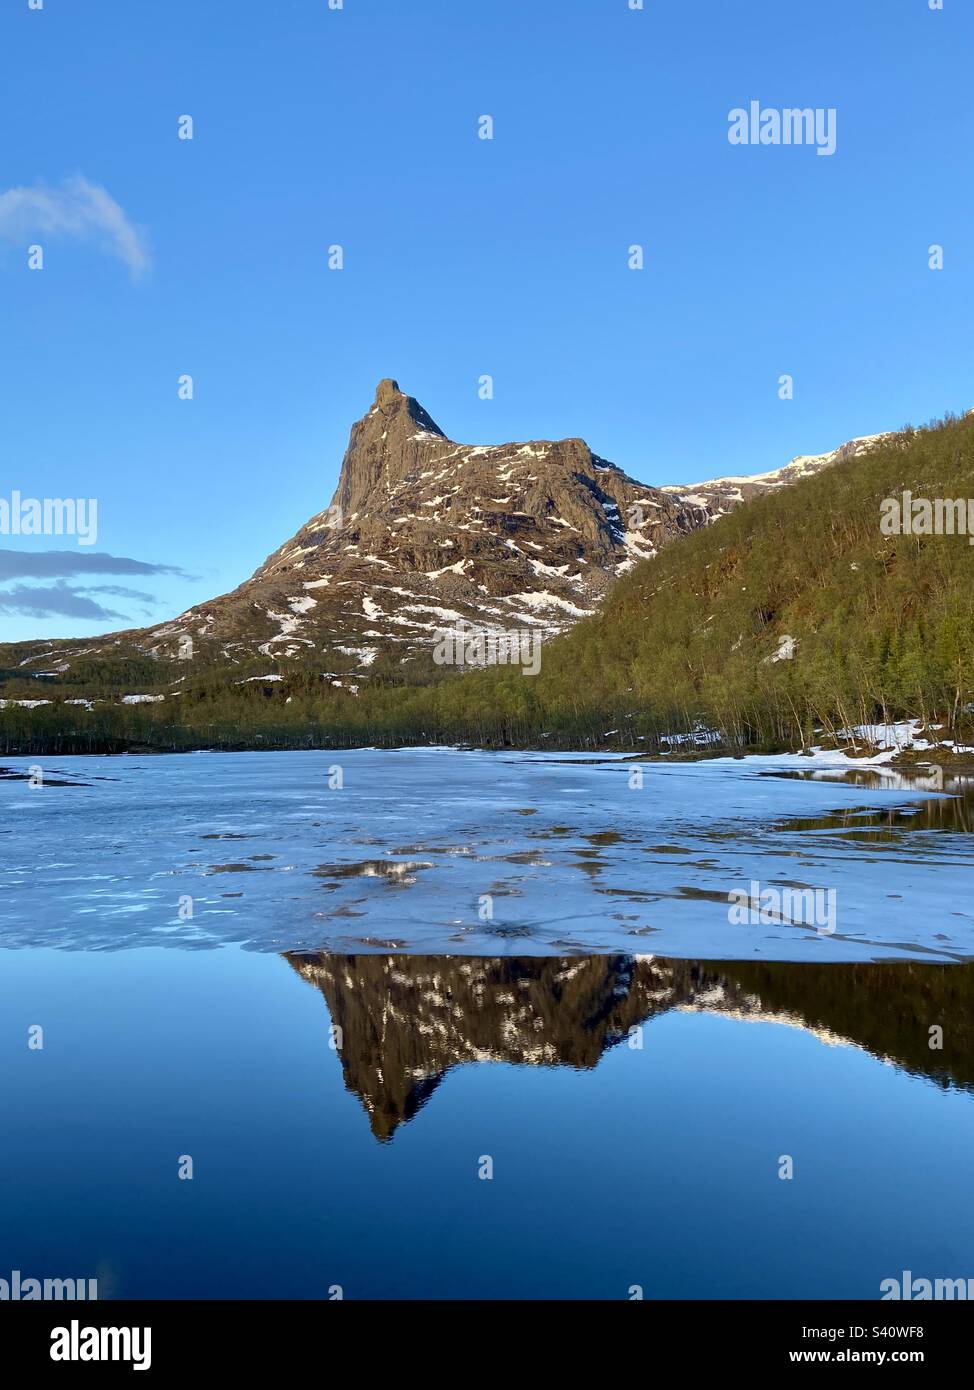 Vista della montagna Romabstøtta nella Norvegia settentrionale sopra il serbatoio d'acqua con ancora del ghiaccio su di esso. Effetto specchio nell'acqua dalla cima della montagna. Foto scattata durante le escursioni intorno a mezzanotte. Foto Stock